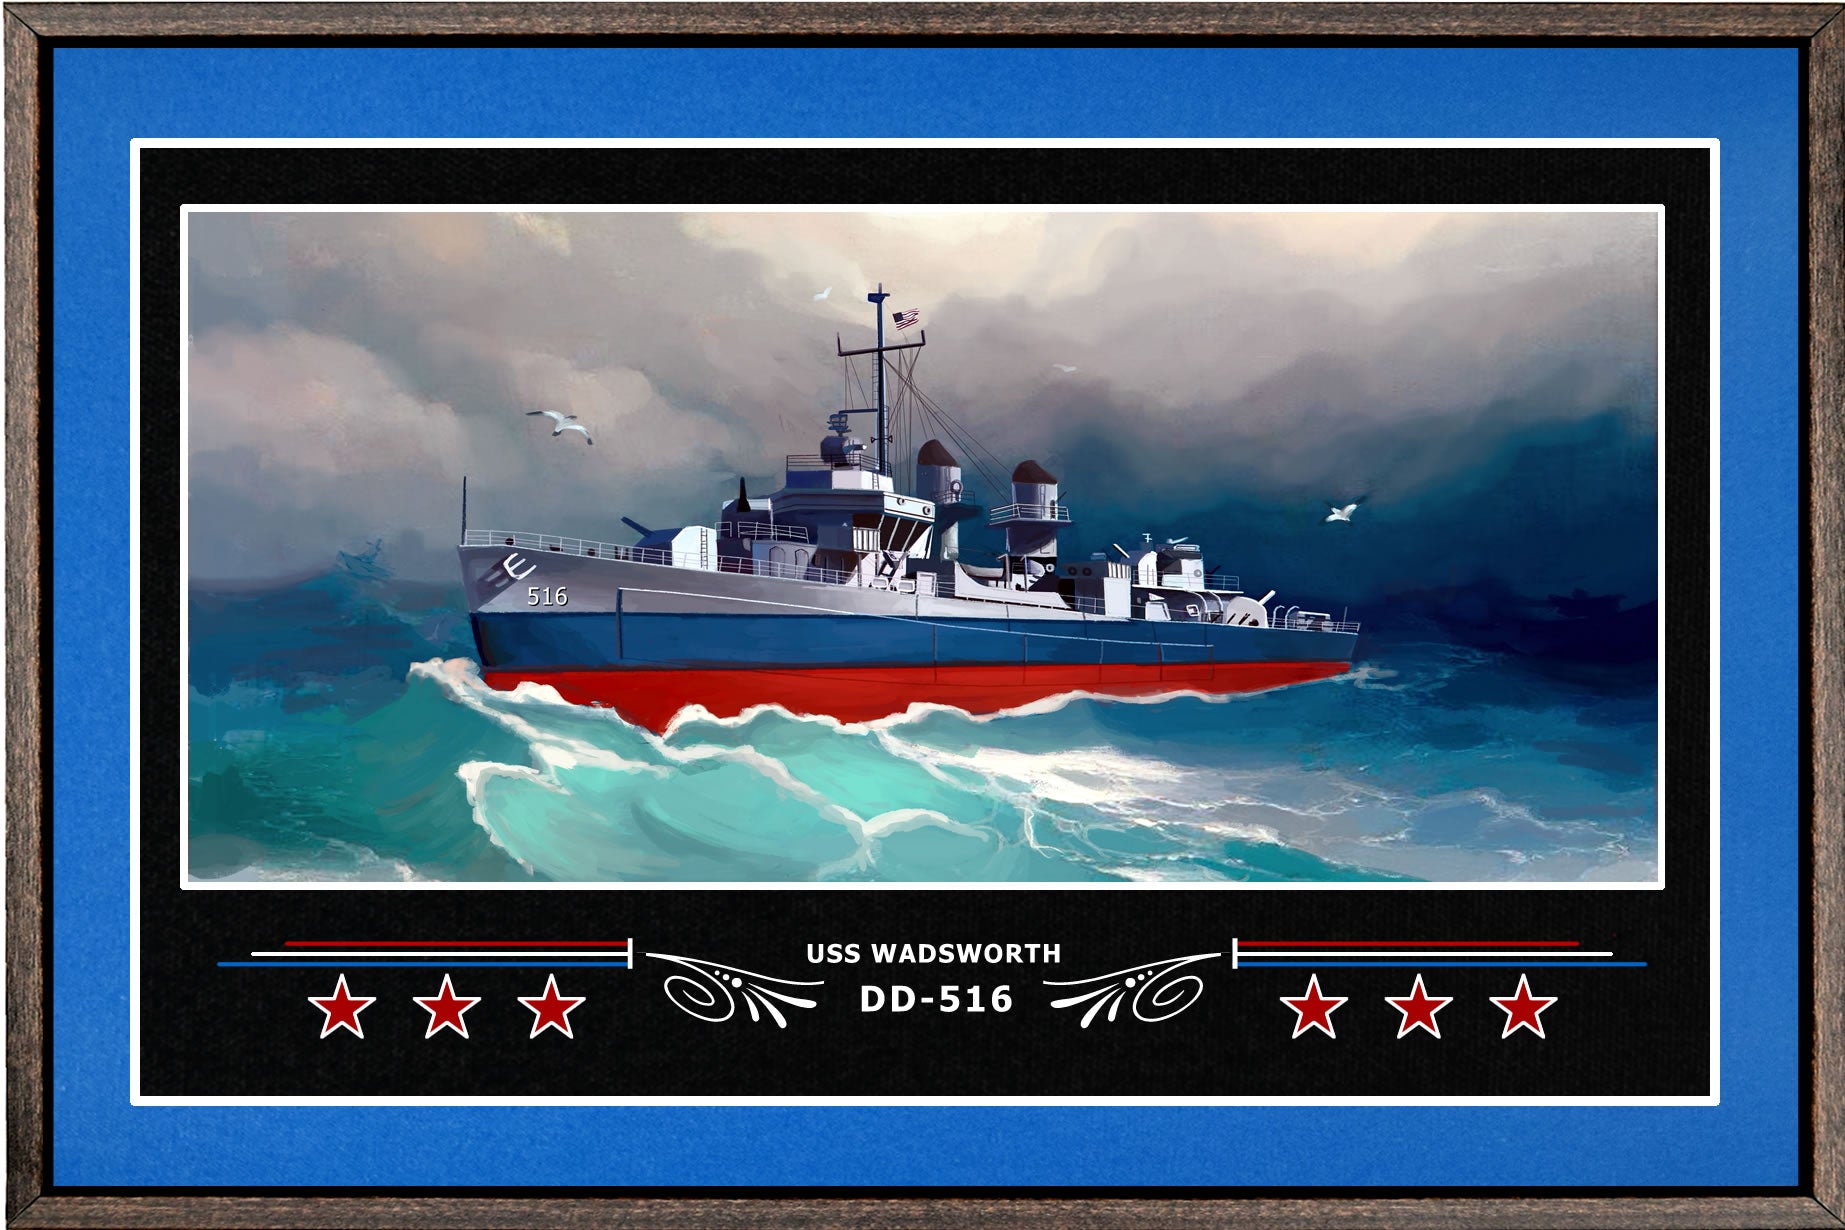 USS WADSWORTH DD 516 BOX FRAMED CANVAS ART BLUE